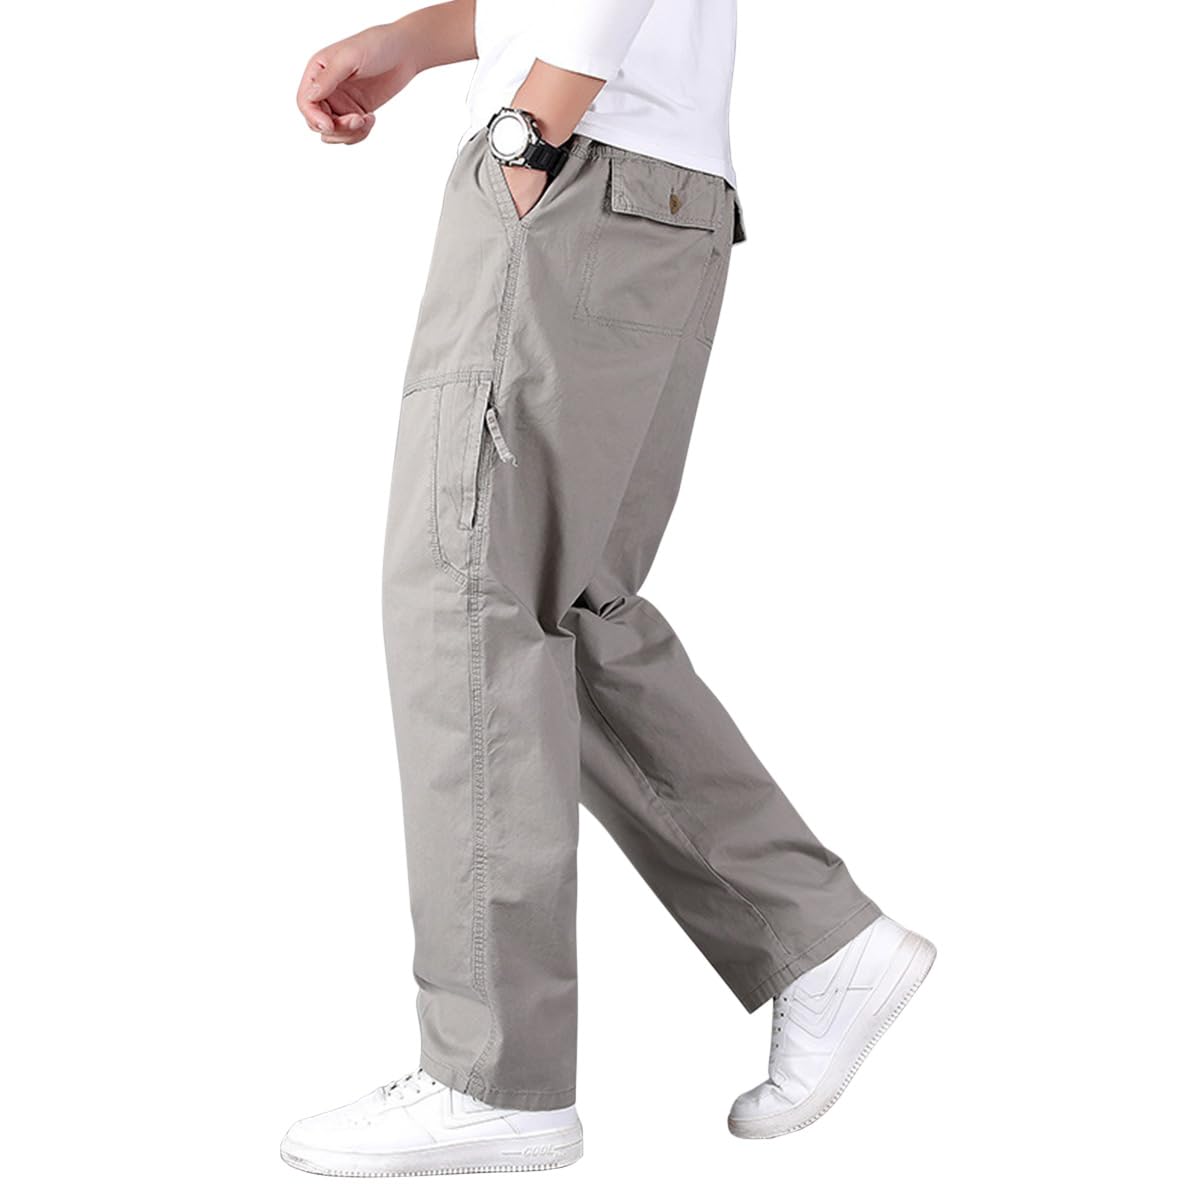 WHITE CROSS - 373 - Drawstring Pants PETITE (PXXS-P2XL) – Work Fit Scrubs